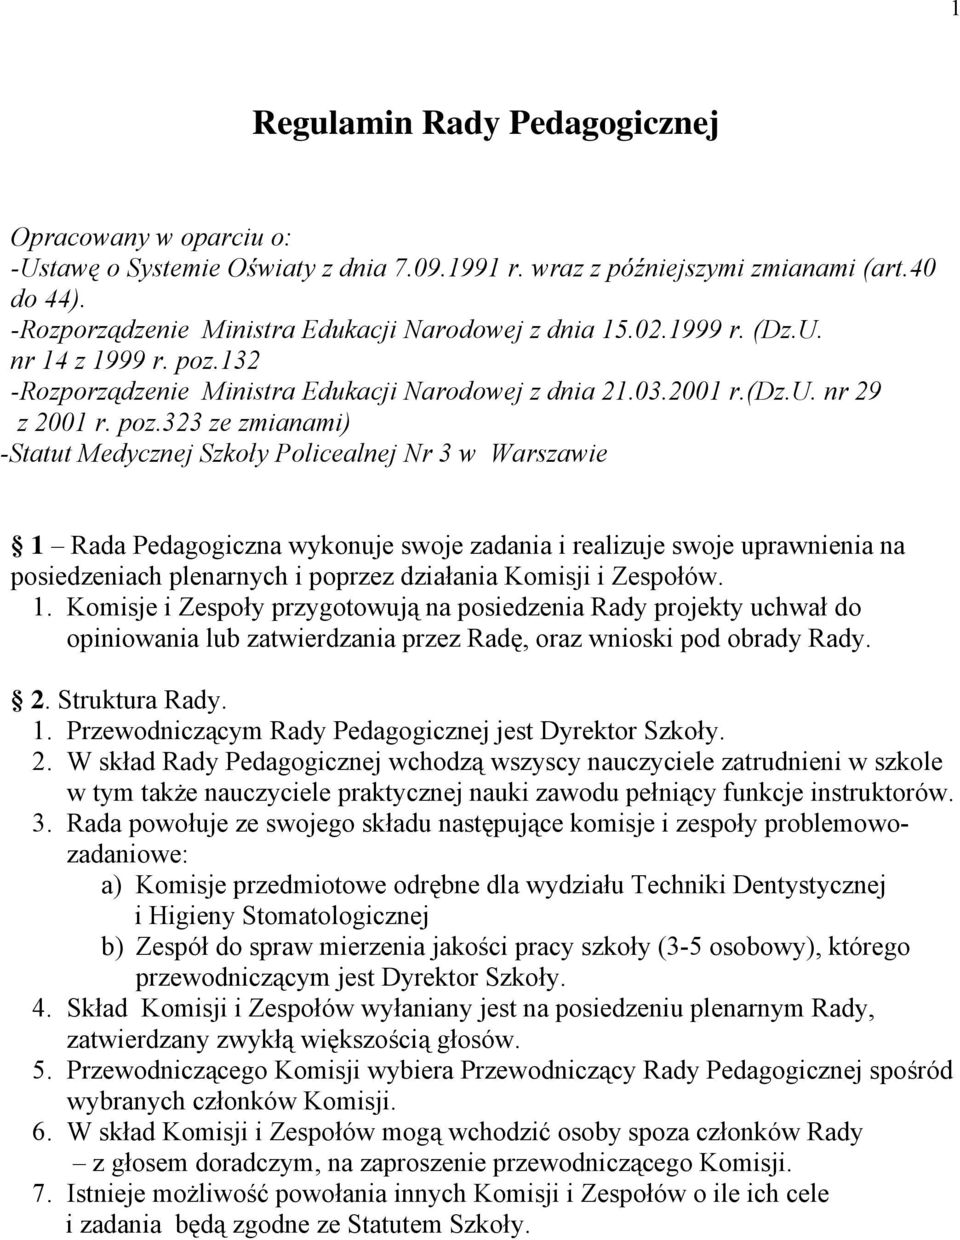 132 -Rozporządzenie Ministra Edukacji Narodowej z dnia 21.03.2001 r.(dz.u. nr 29 z 2001 r. poz.